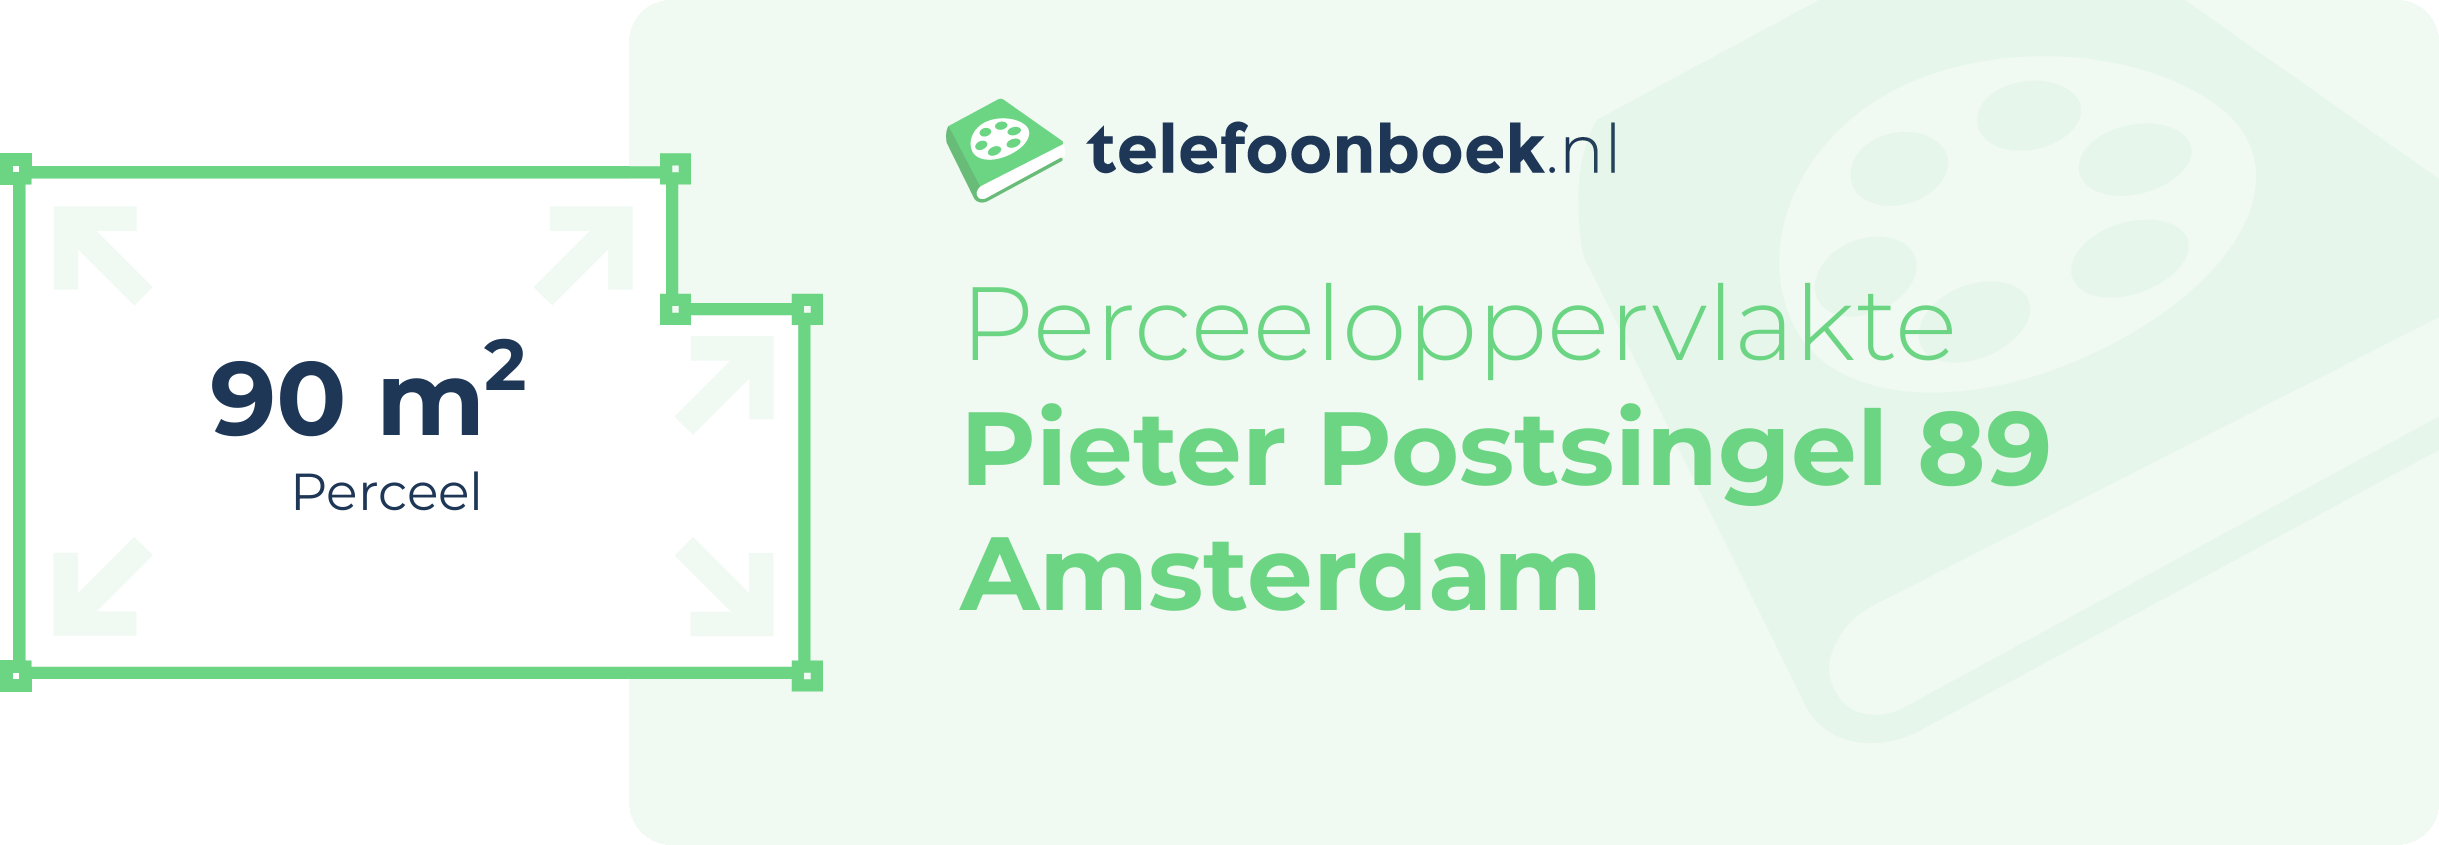 Perceeloppervlakte Pieter Postsingel 89 Amsterdam